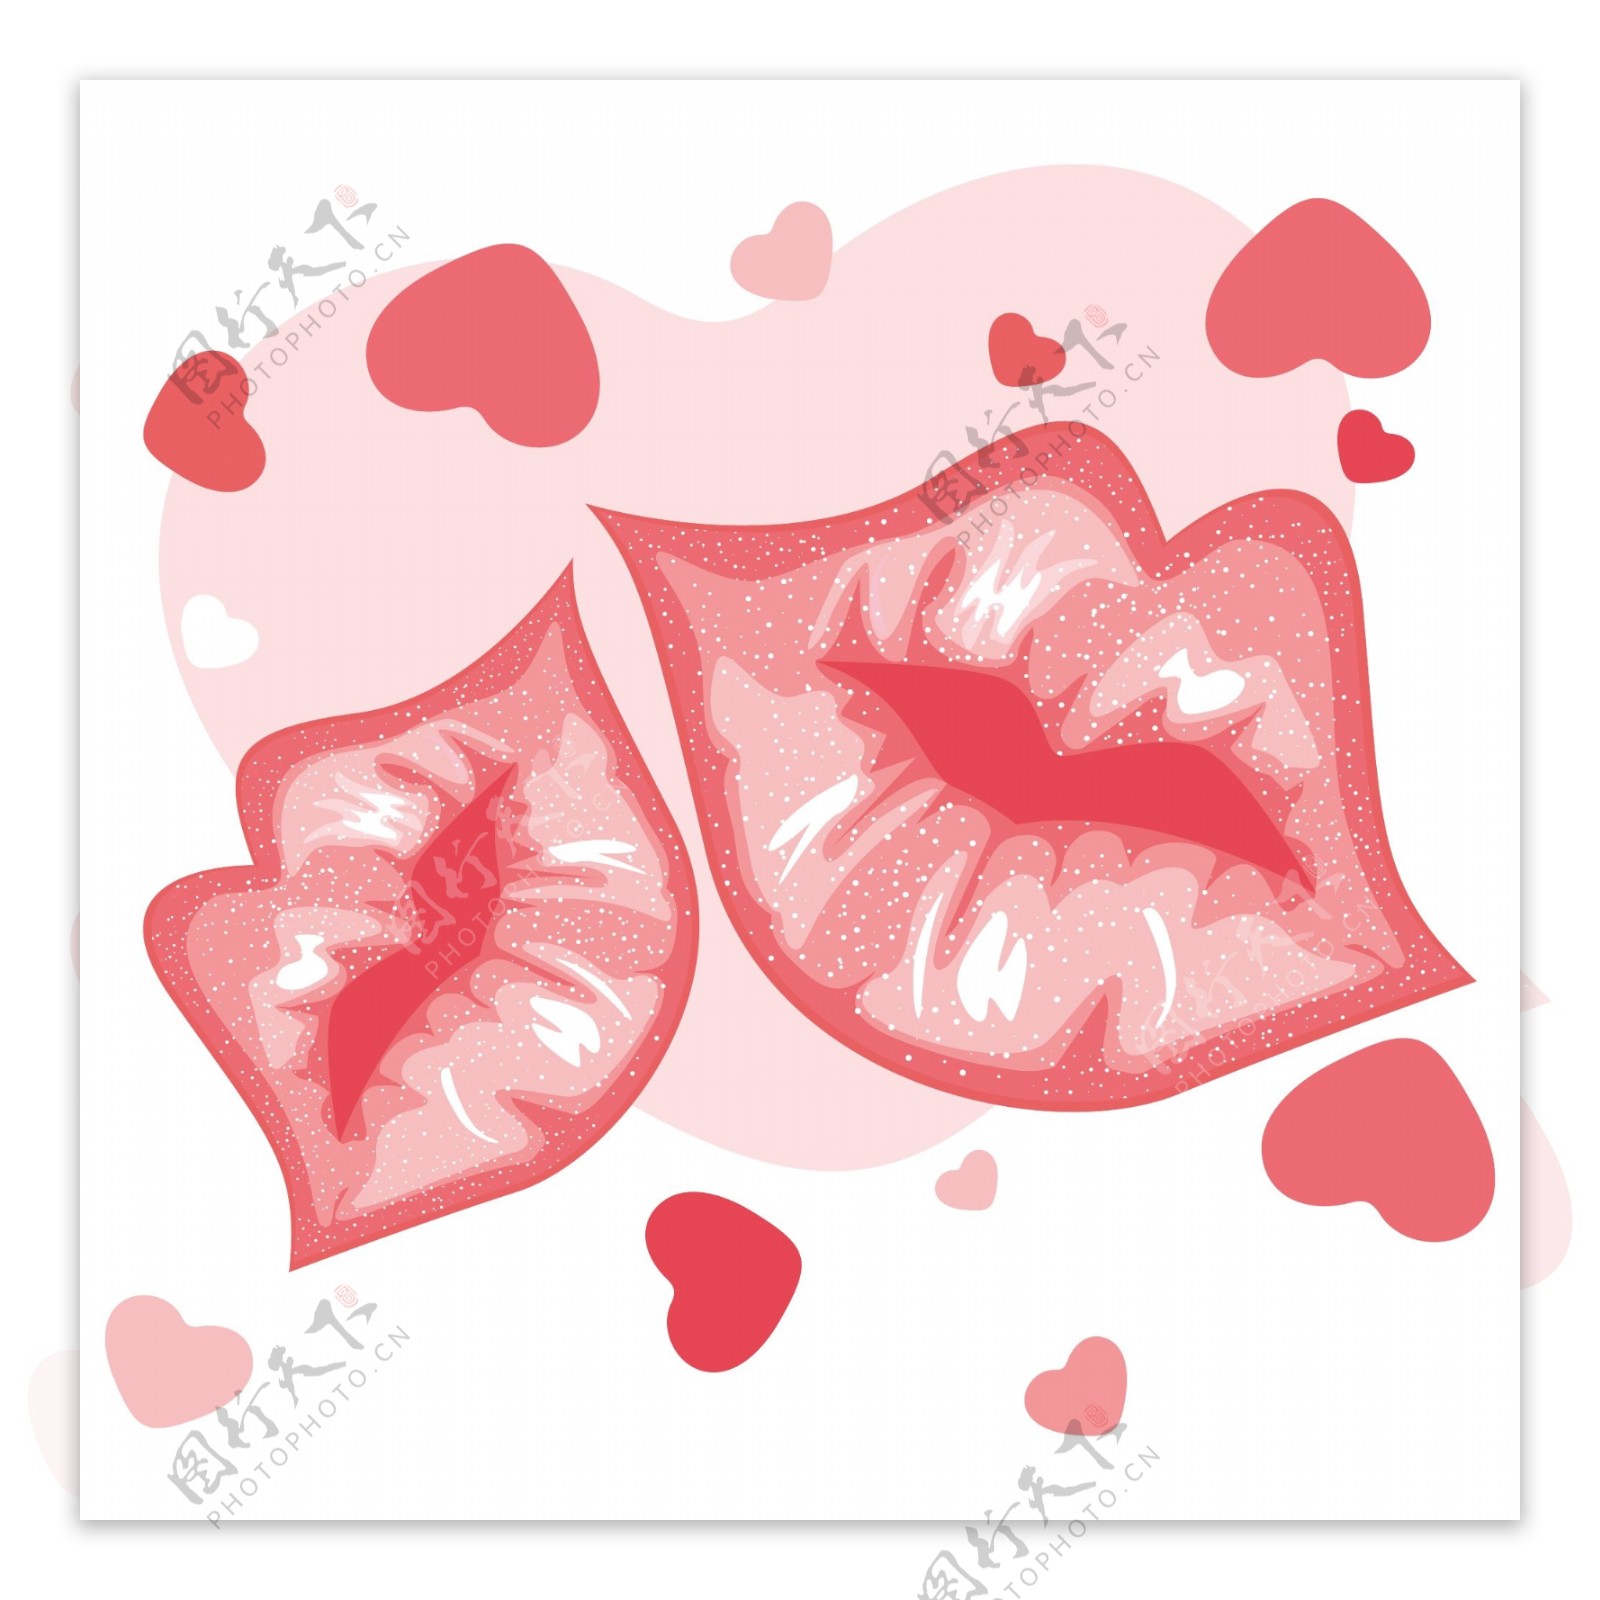 向量的性感的嘴唇与心脏的形状说明